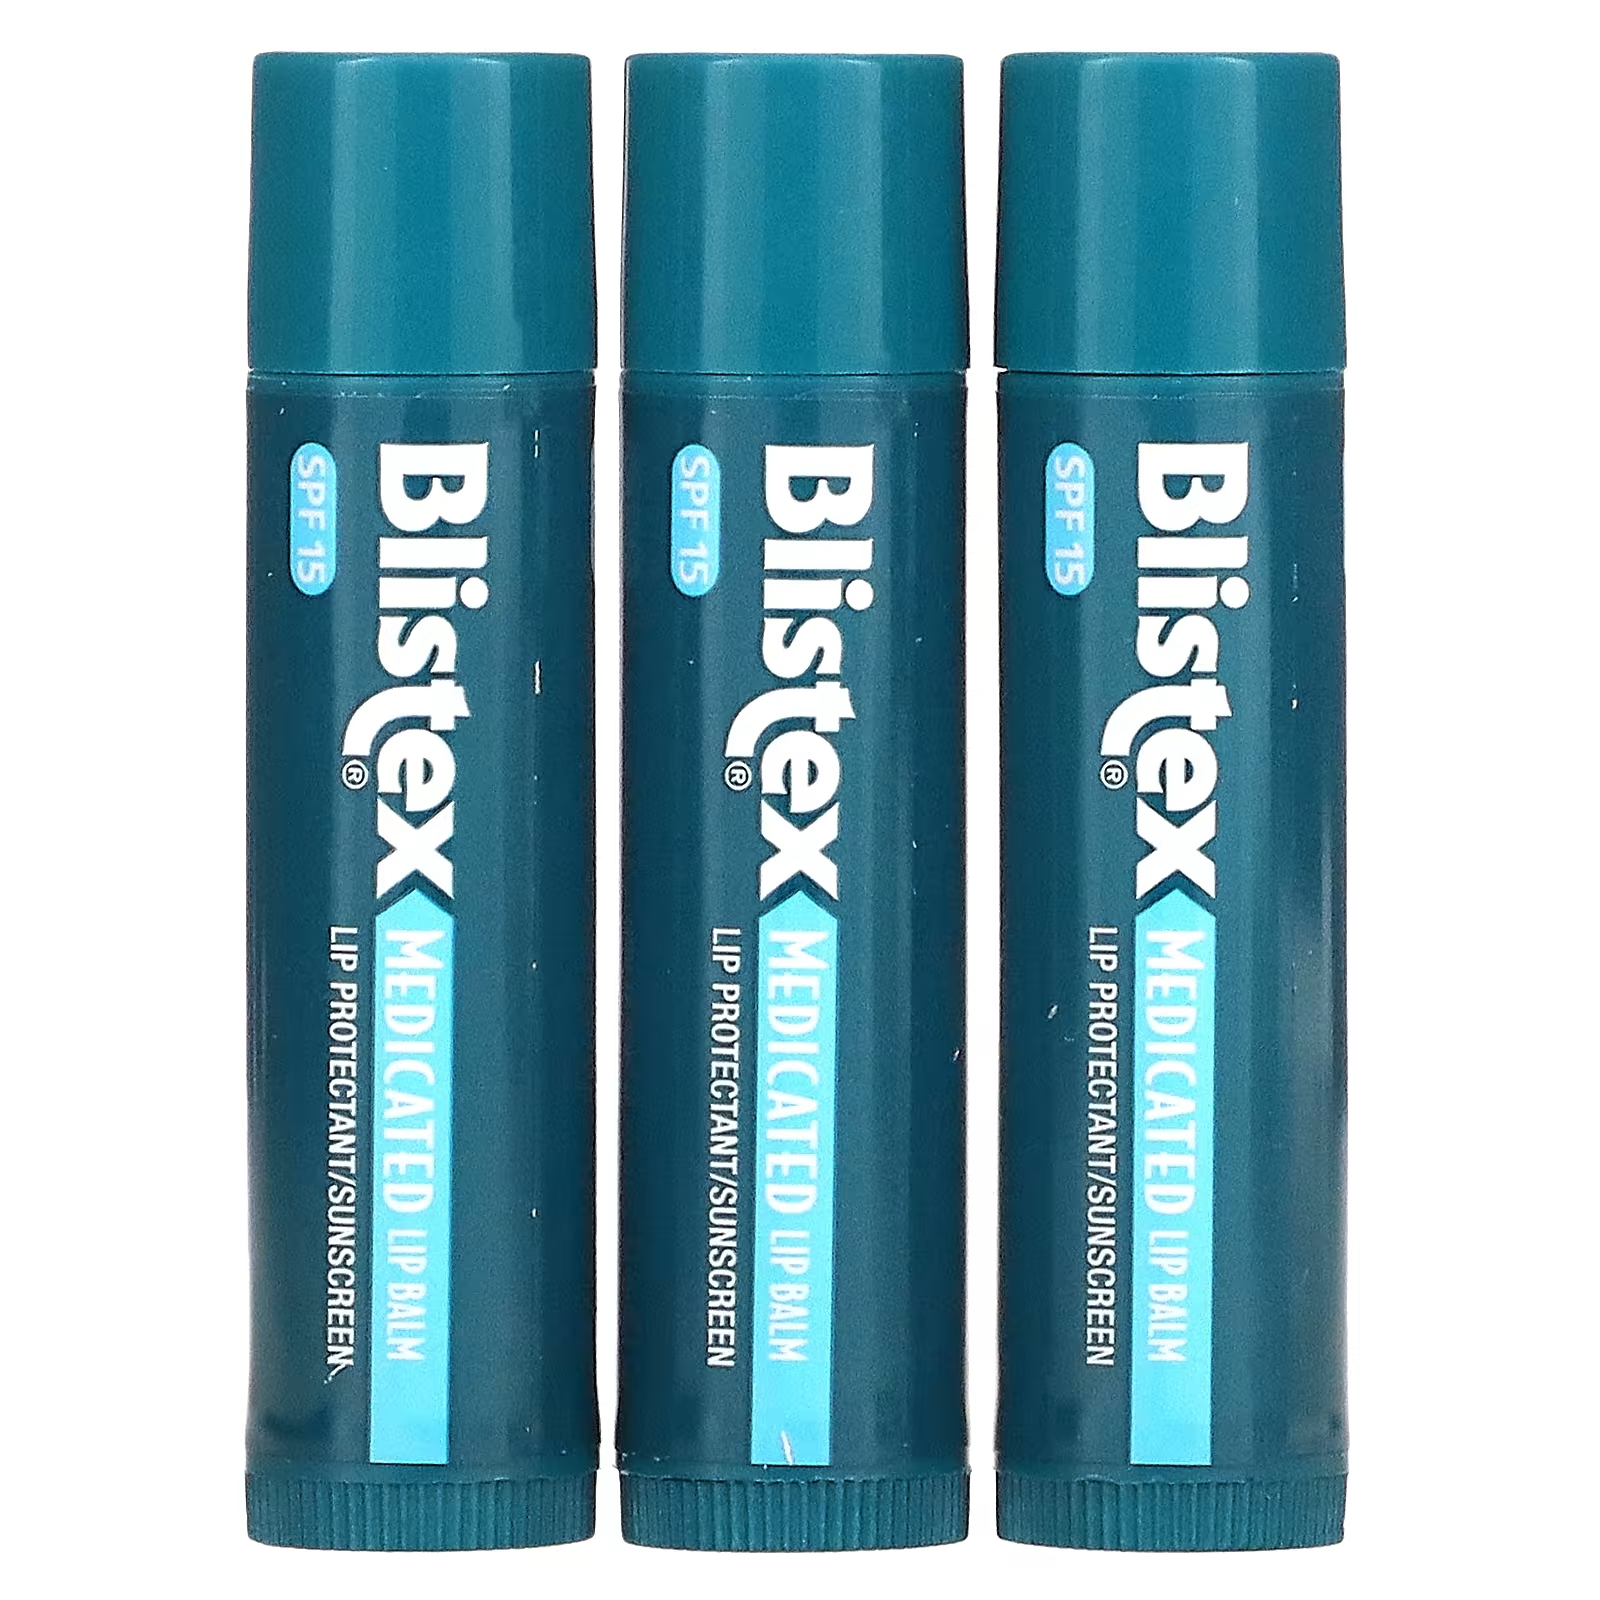 Blistex Лекарственное средство для защиты губ/солнцезащитный крем SPF 15, оригинальная упаковка из 3 бальзамов по 0,15 унции (4,25 г) каждая blistex лекарственное средство для защиты губ солнцезащитное средство spf 15 berry 0 15 унции 4 25 г